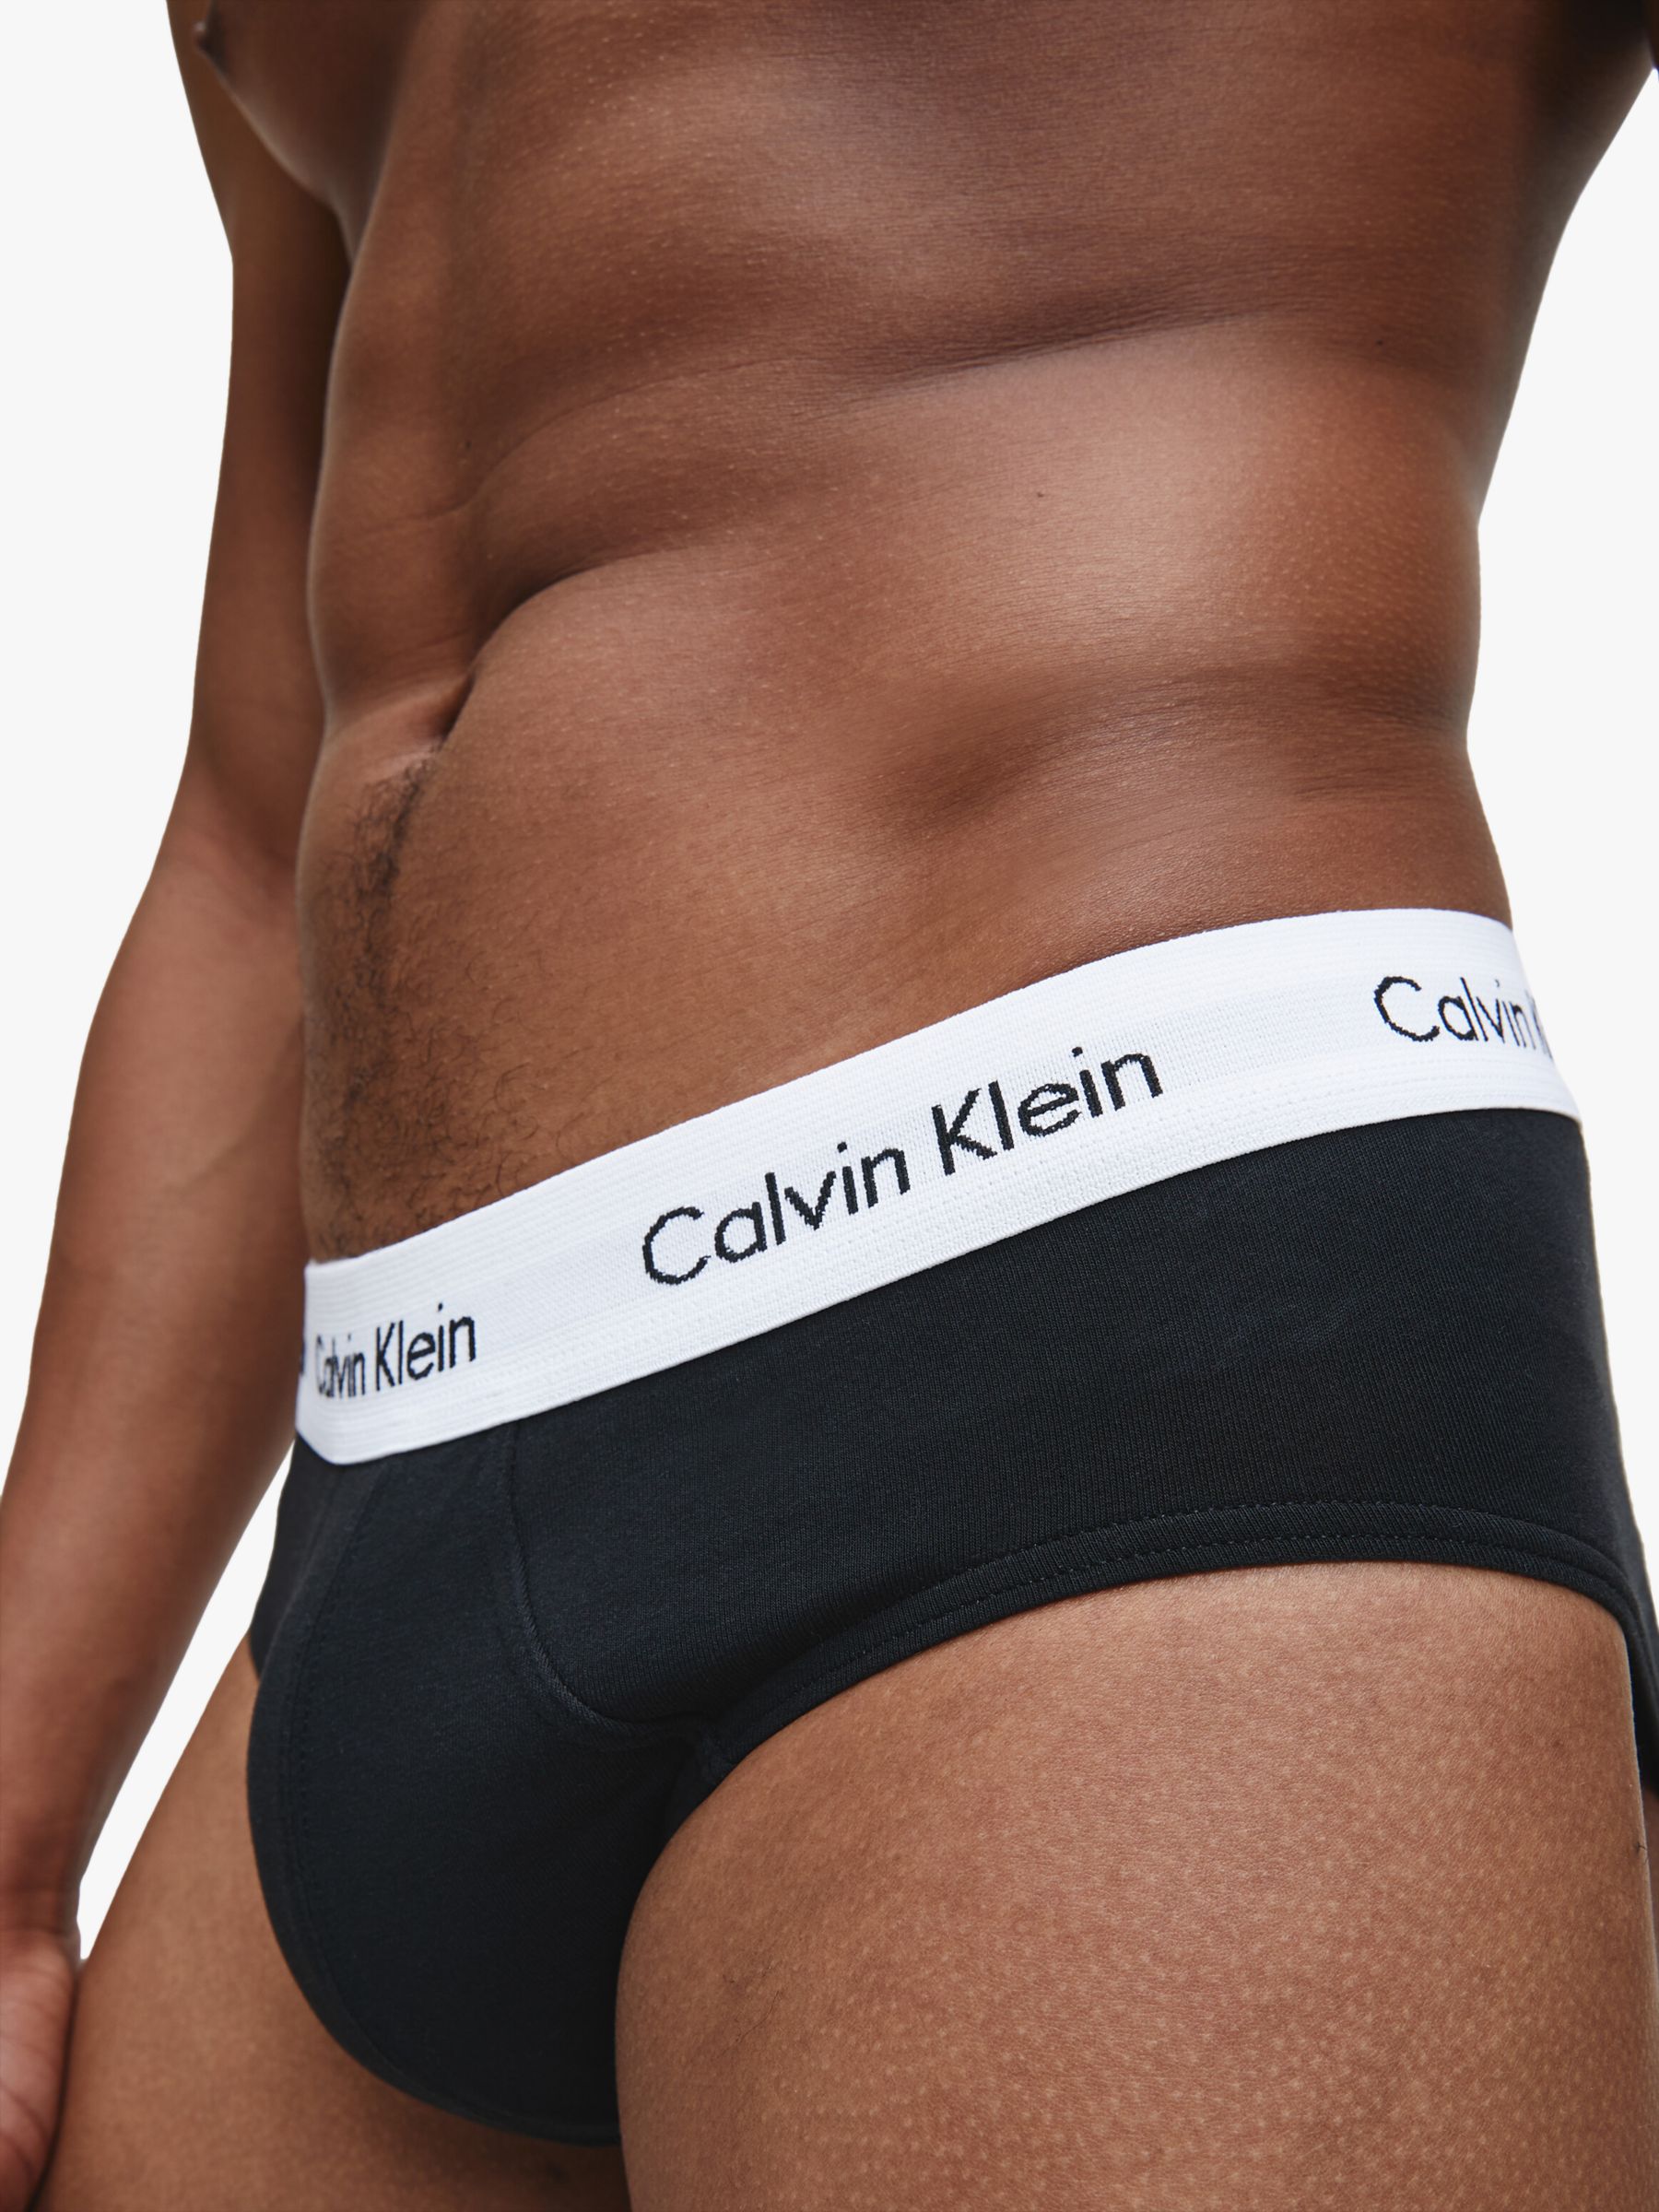 Buy Calvin Klein Cotton Women Solid Black Underwear (Pack of 1